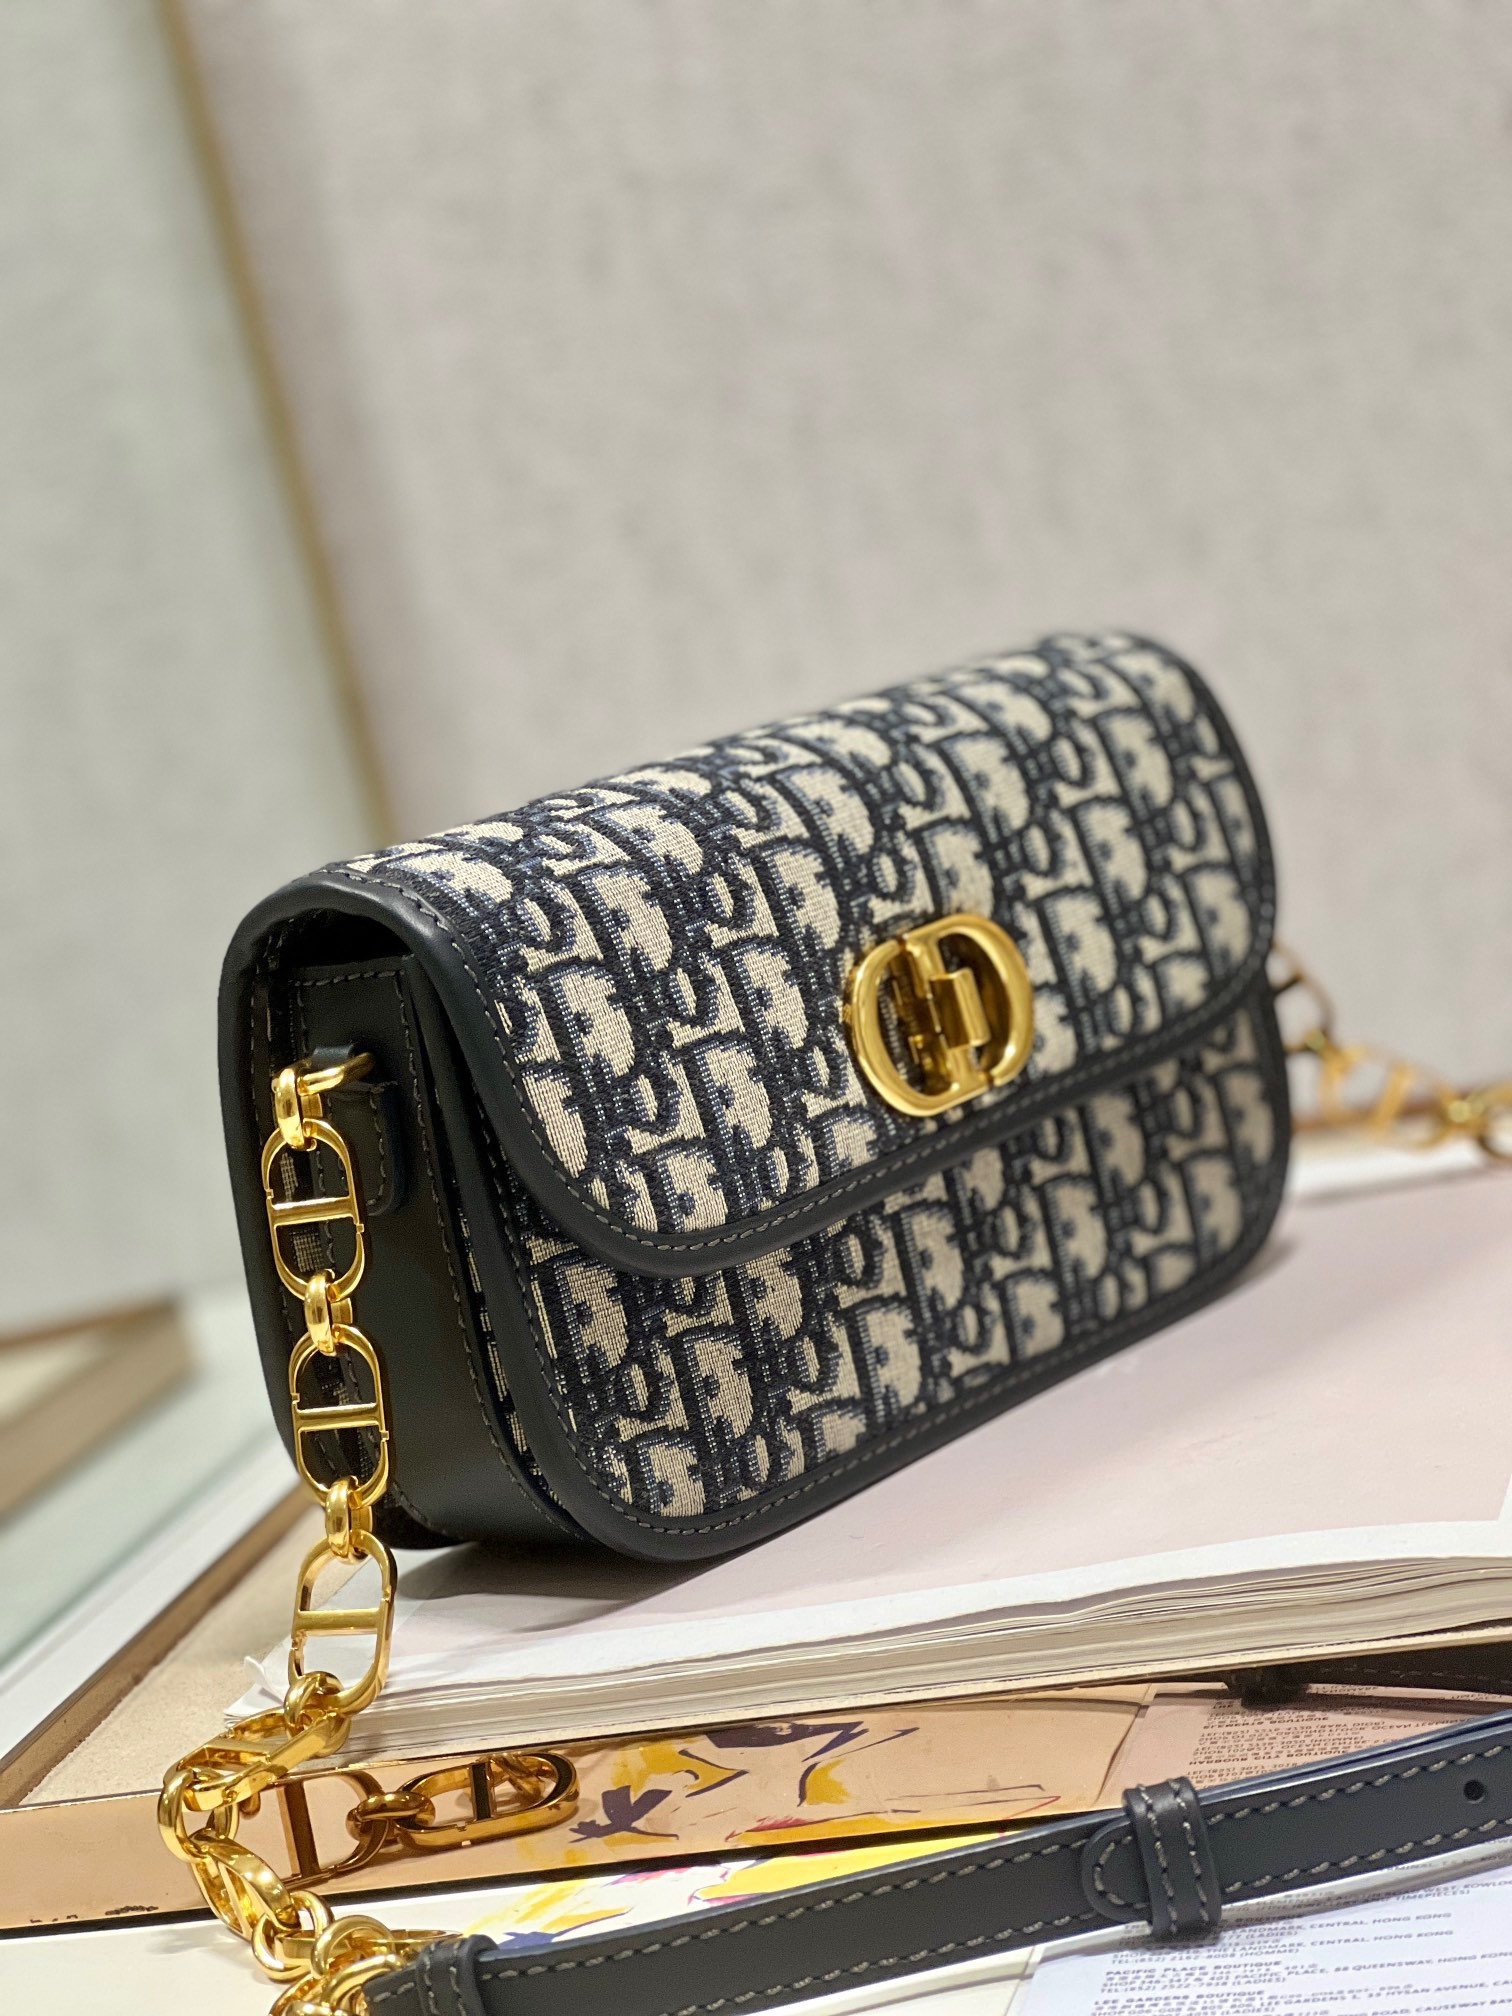 迪奥Dior顶级进口原厂牛皮刺绣链条包️30MontaigneAvenue手袋采用典雅的设计提升此经典系